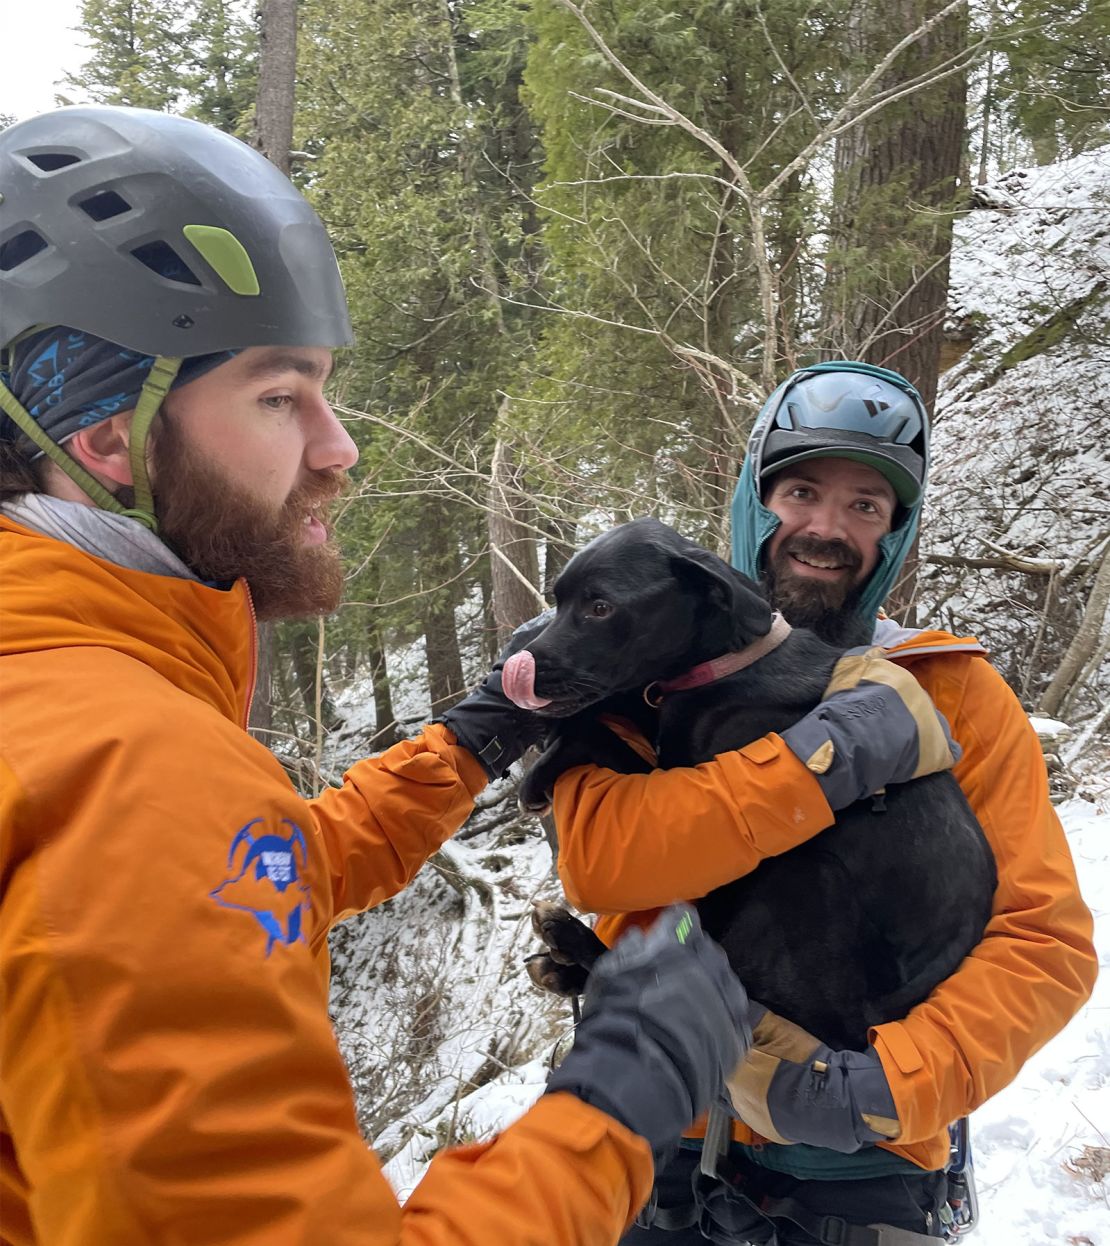 El Servicio de Parques Nacionales dice que un perro de 3 años llamado Dancer fue rescatado y reunido con sus dueños después de caer desde un acantilado de 60 pies cerca del Lago Superior en Michigan.